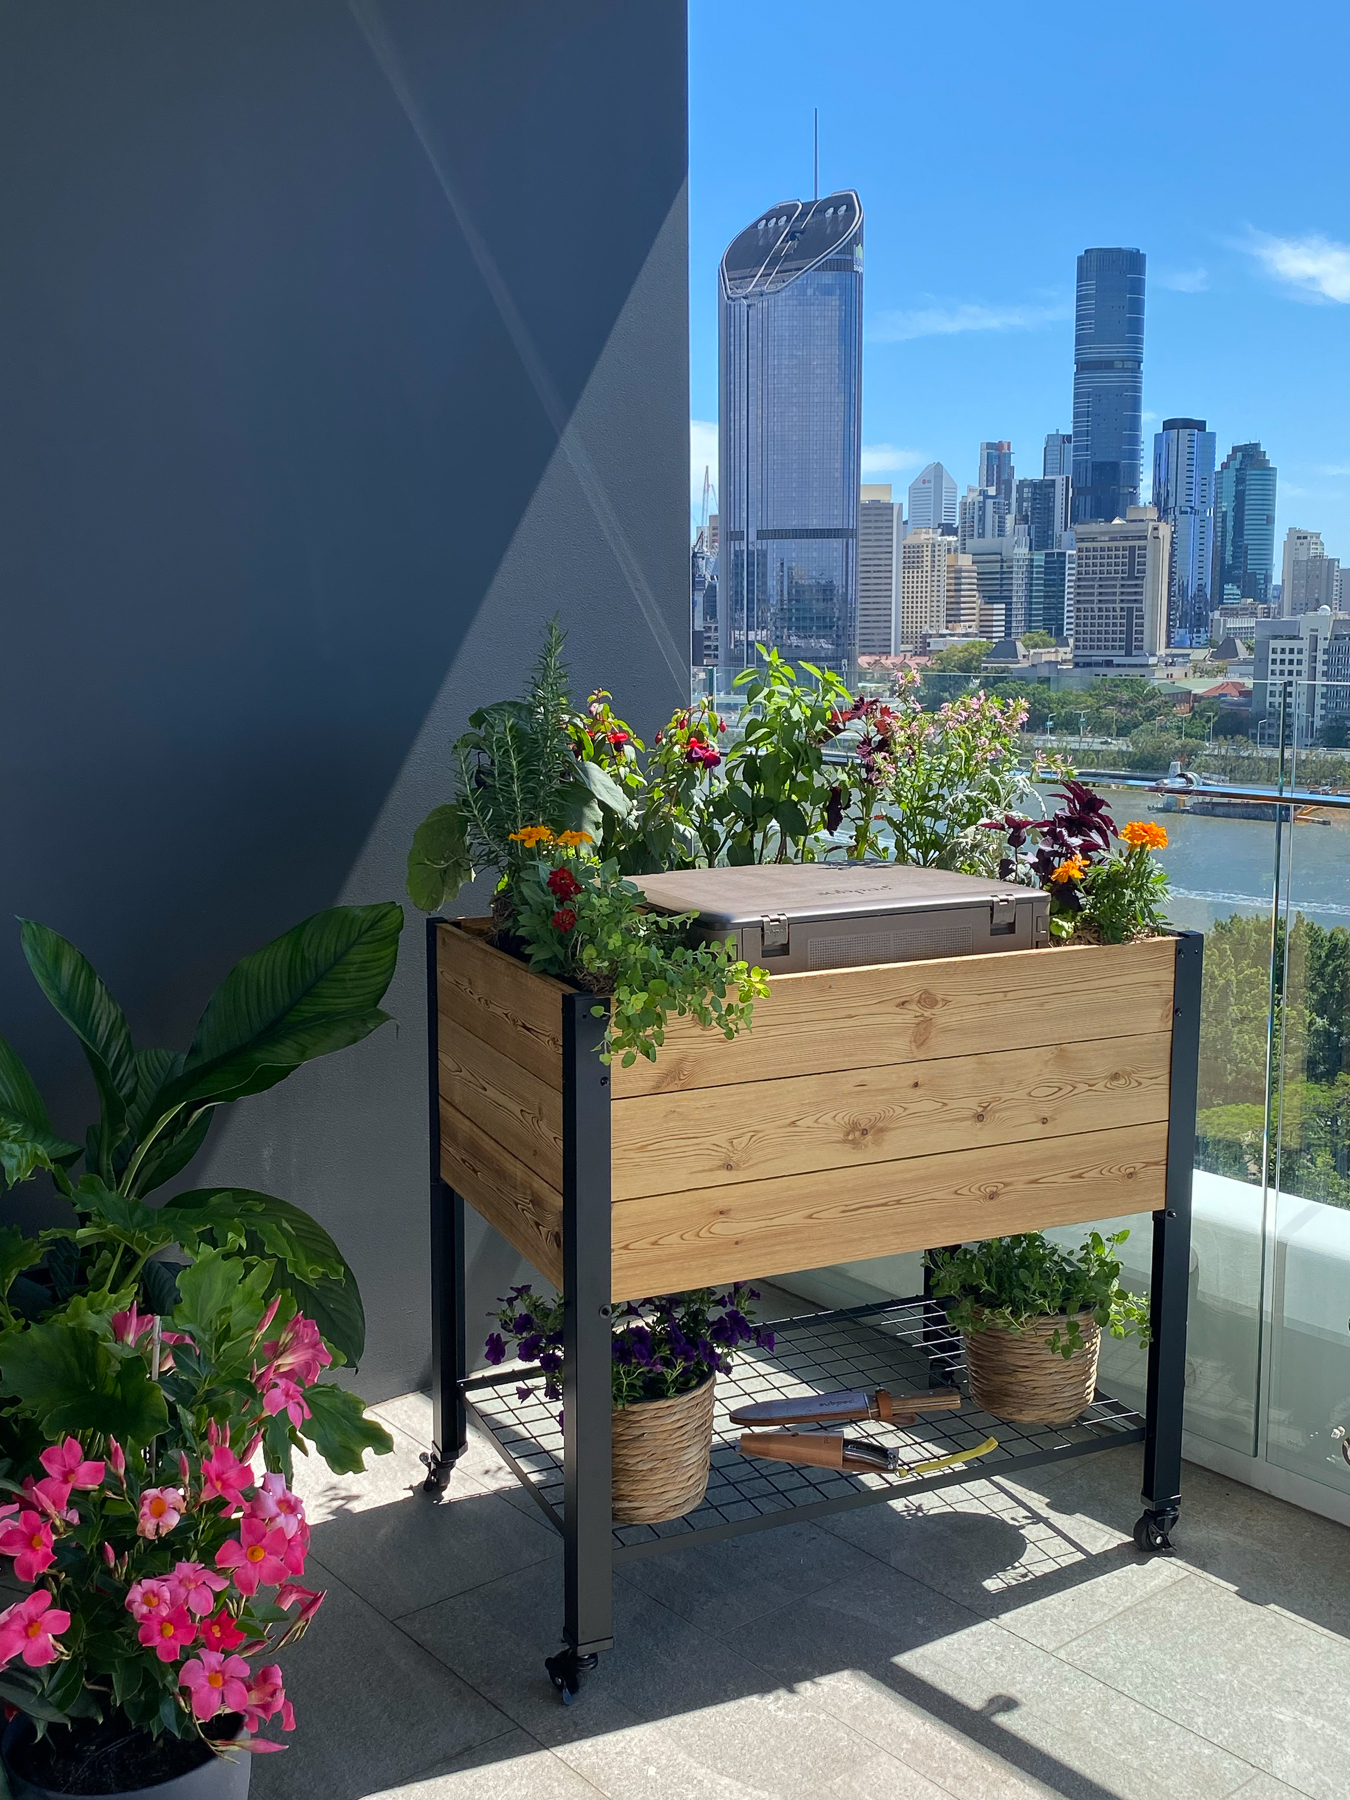 Modbed grow system on urban balcony